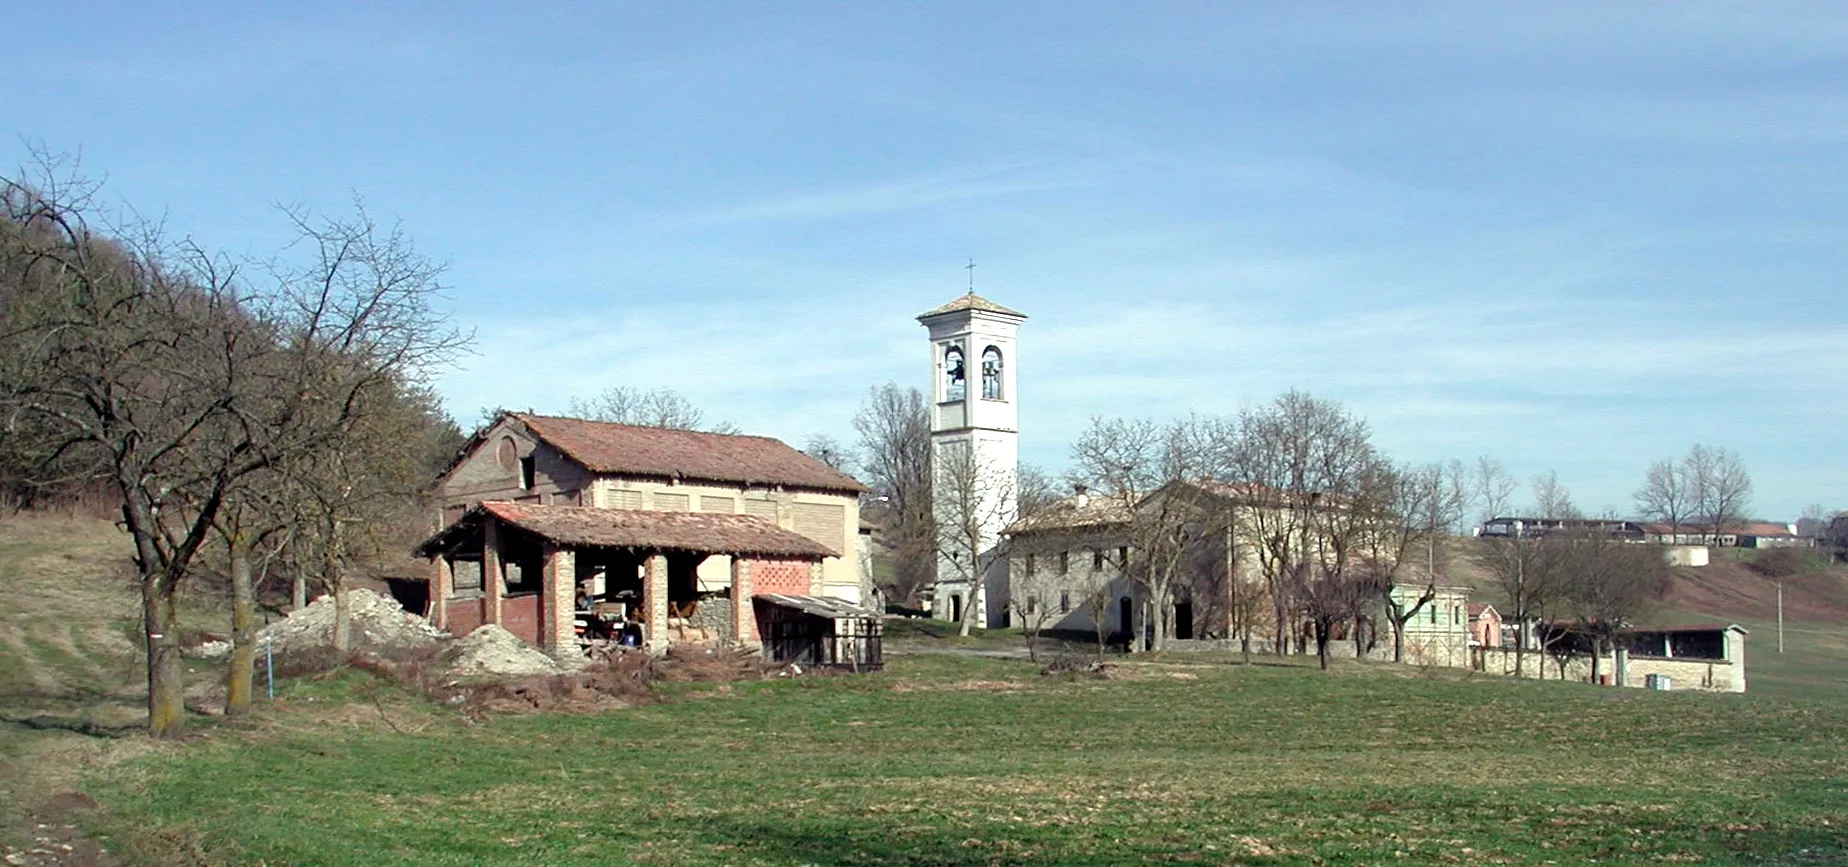 Photo showing: San Donnino, Carpineti, provincia di Reggio Emilia, italy

Appennino reggiano